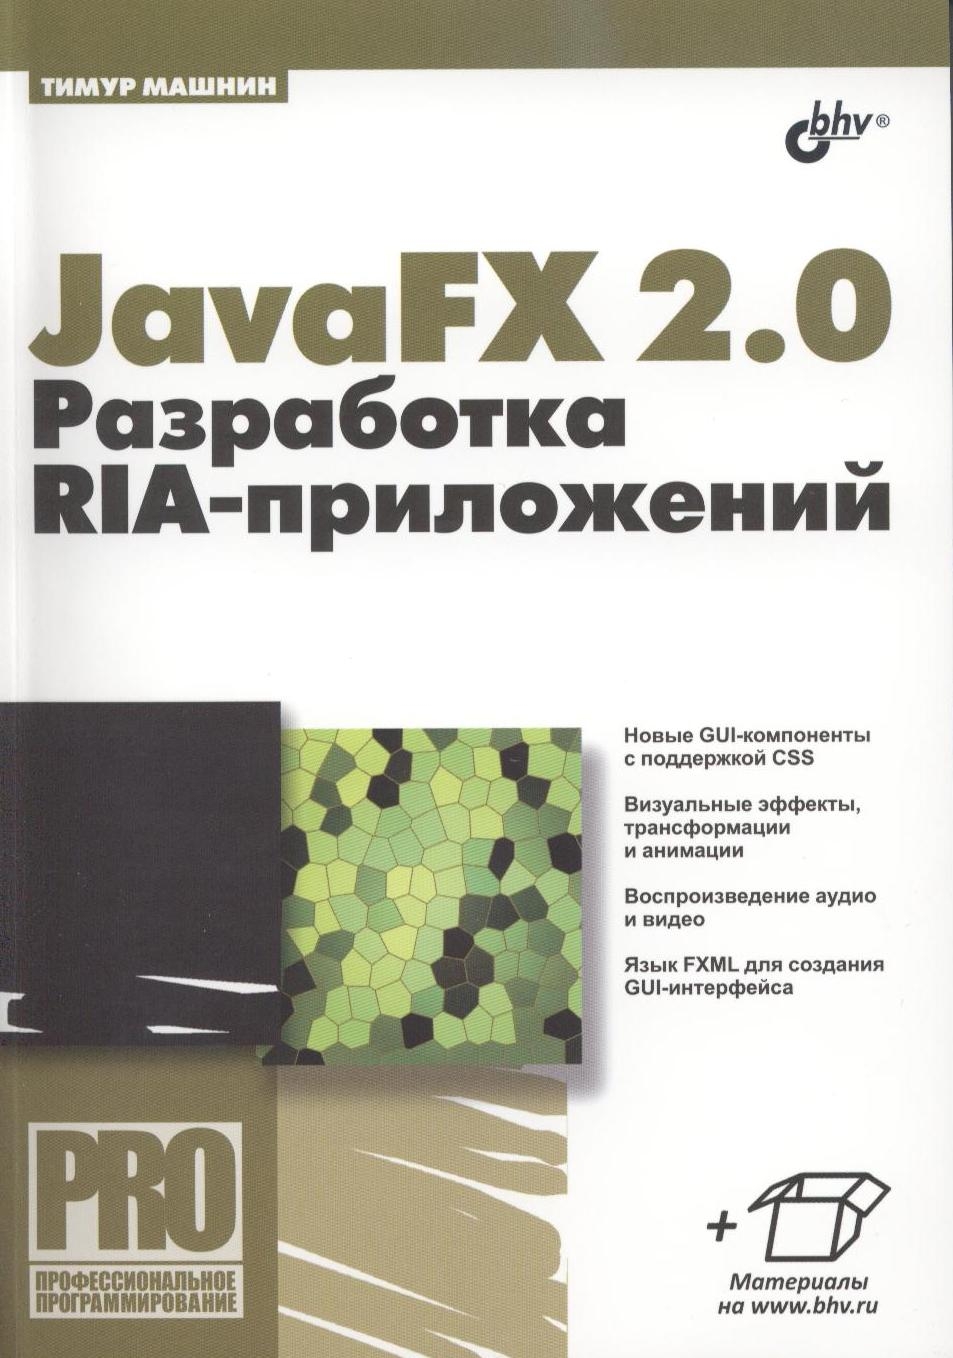 JavaFX 2.0:  RIA-